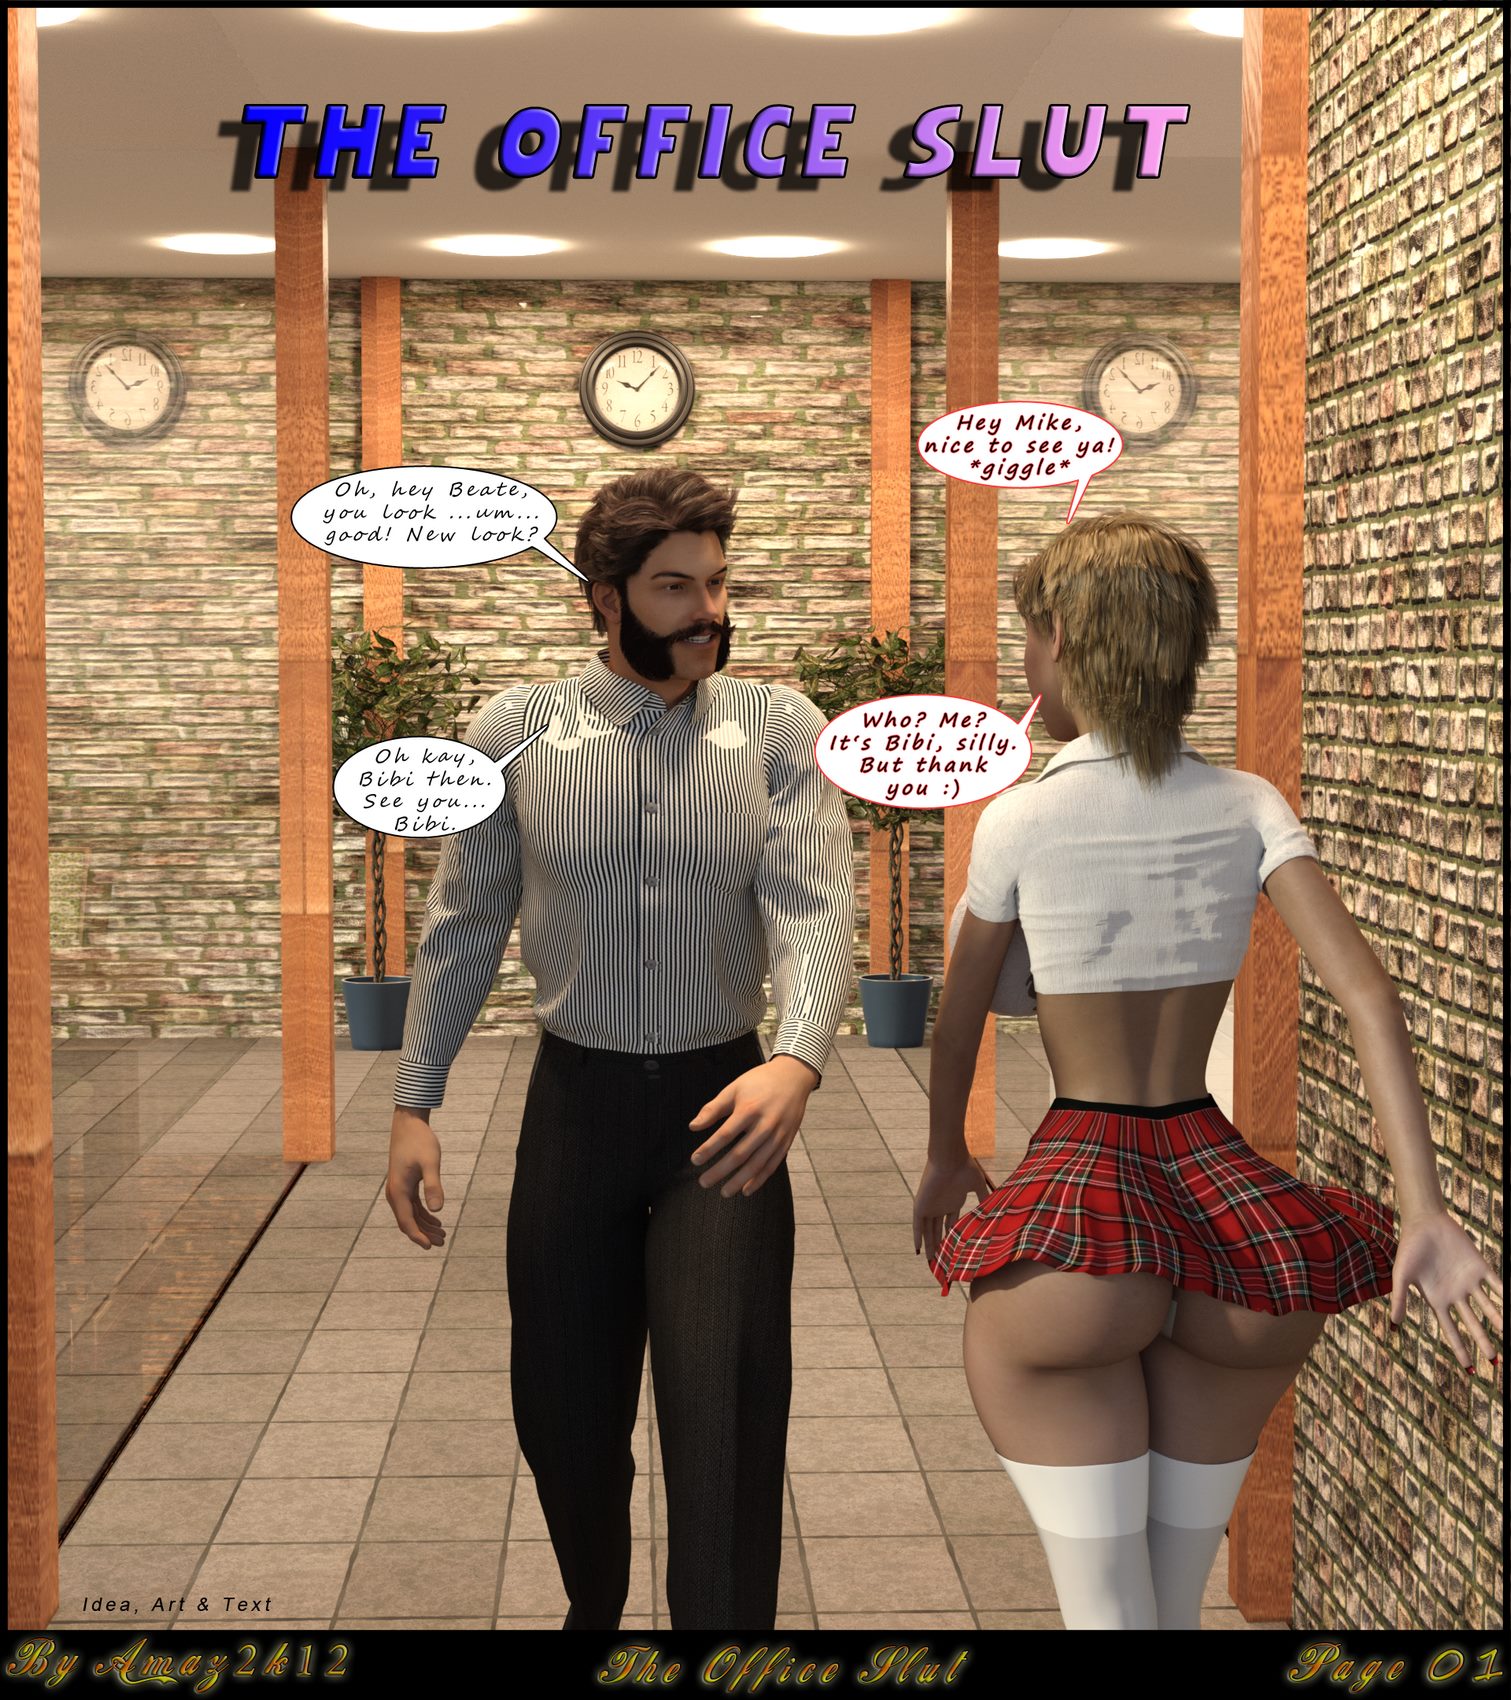 The Office Slut